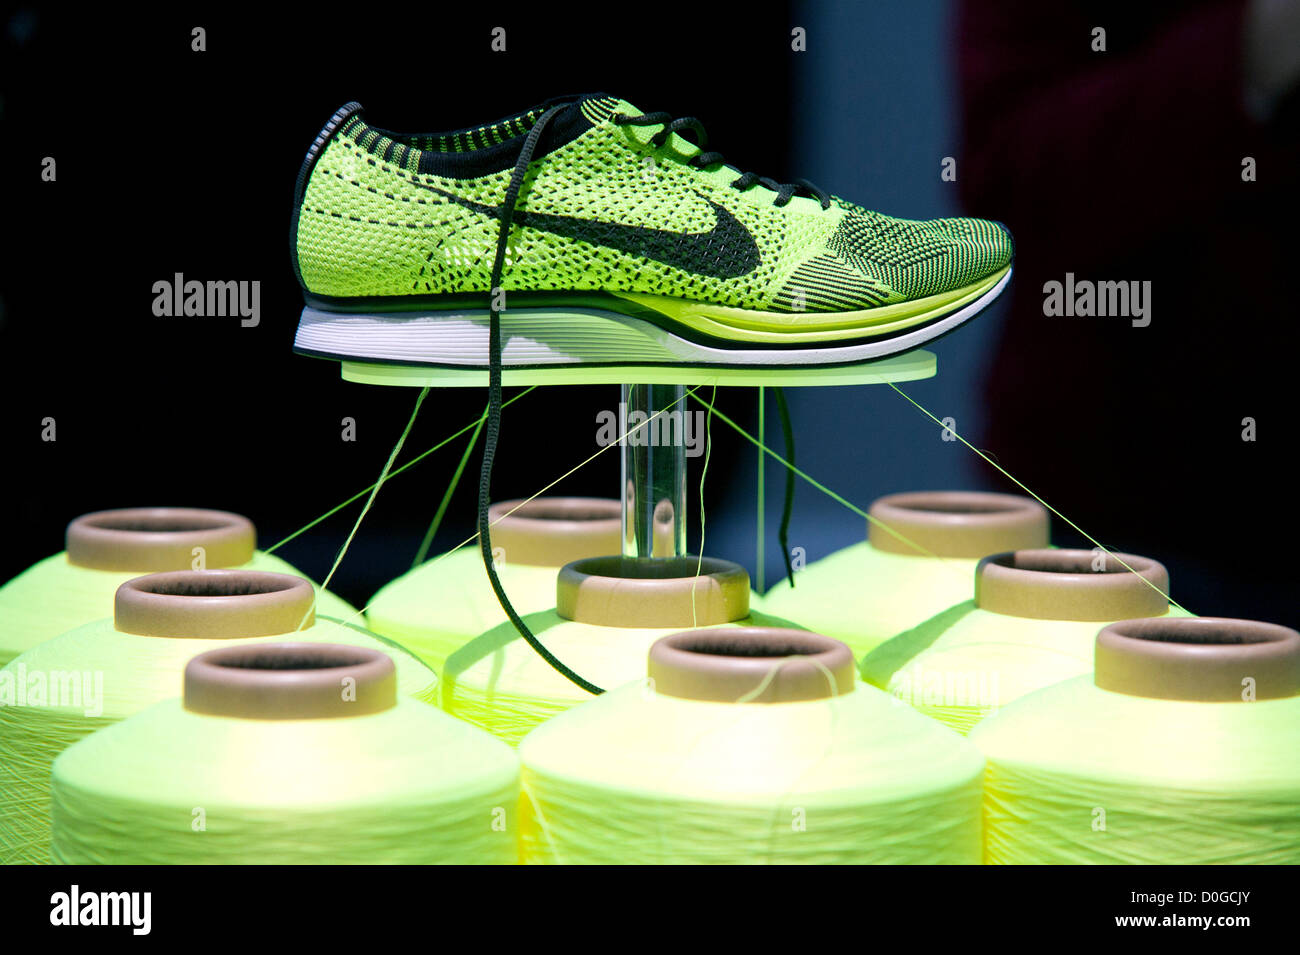 Acusación Judías verdes Levántate El 25 de noviembre de 2012, Tokio, Japón - La nueva tecnología de  zapatillas Nike Flyknit Racer por Nike, Inc. está seleccionado como "Buen  diseño 100 Mejores'. Good Design Award 2012 muestra